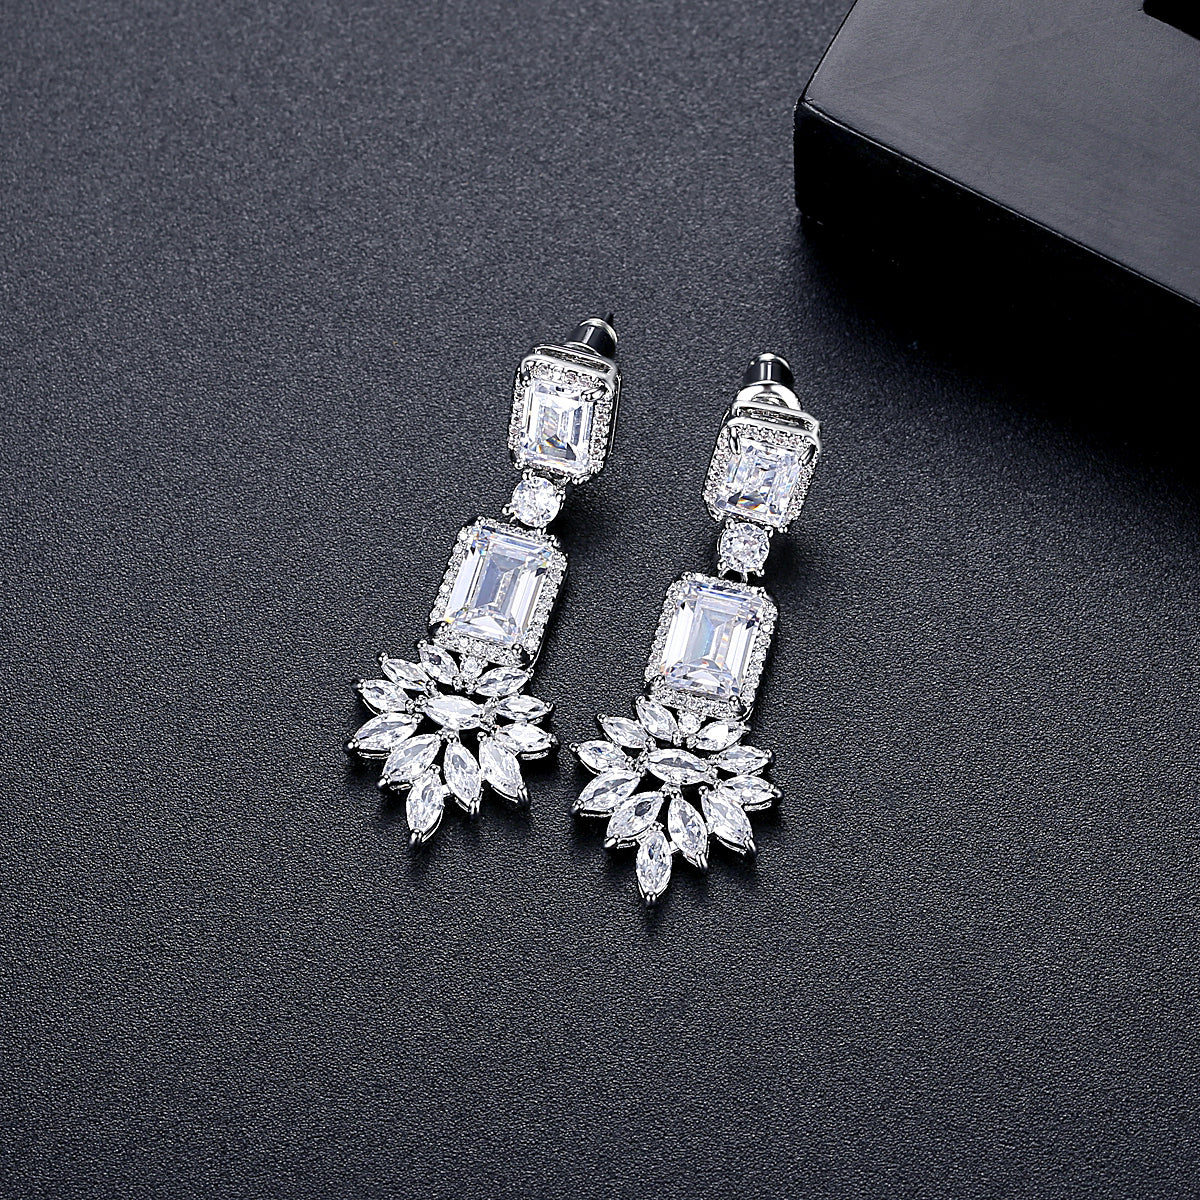 Silver Earrings online for women | Silverlinings | Handmade Filigree